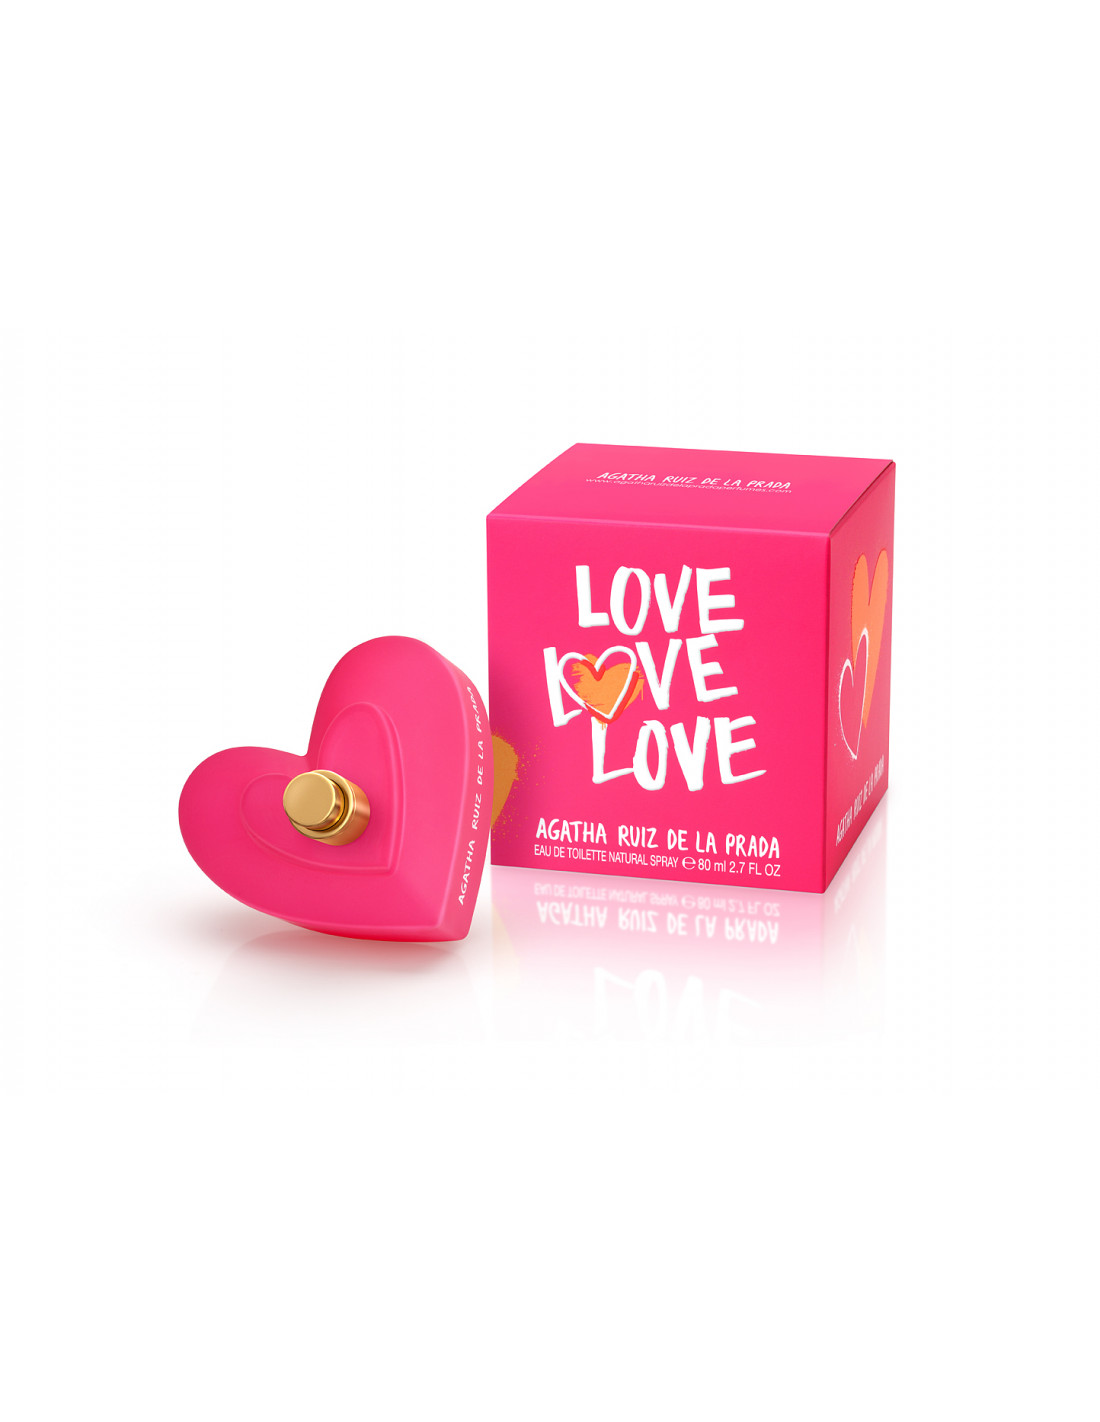 Agatha Ruiz de la Prada Love Love Love Edt 80 Ml en Farmacias y Perfumerias  Rp